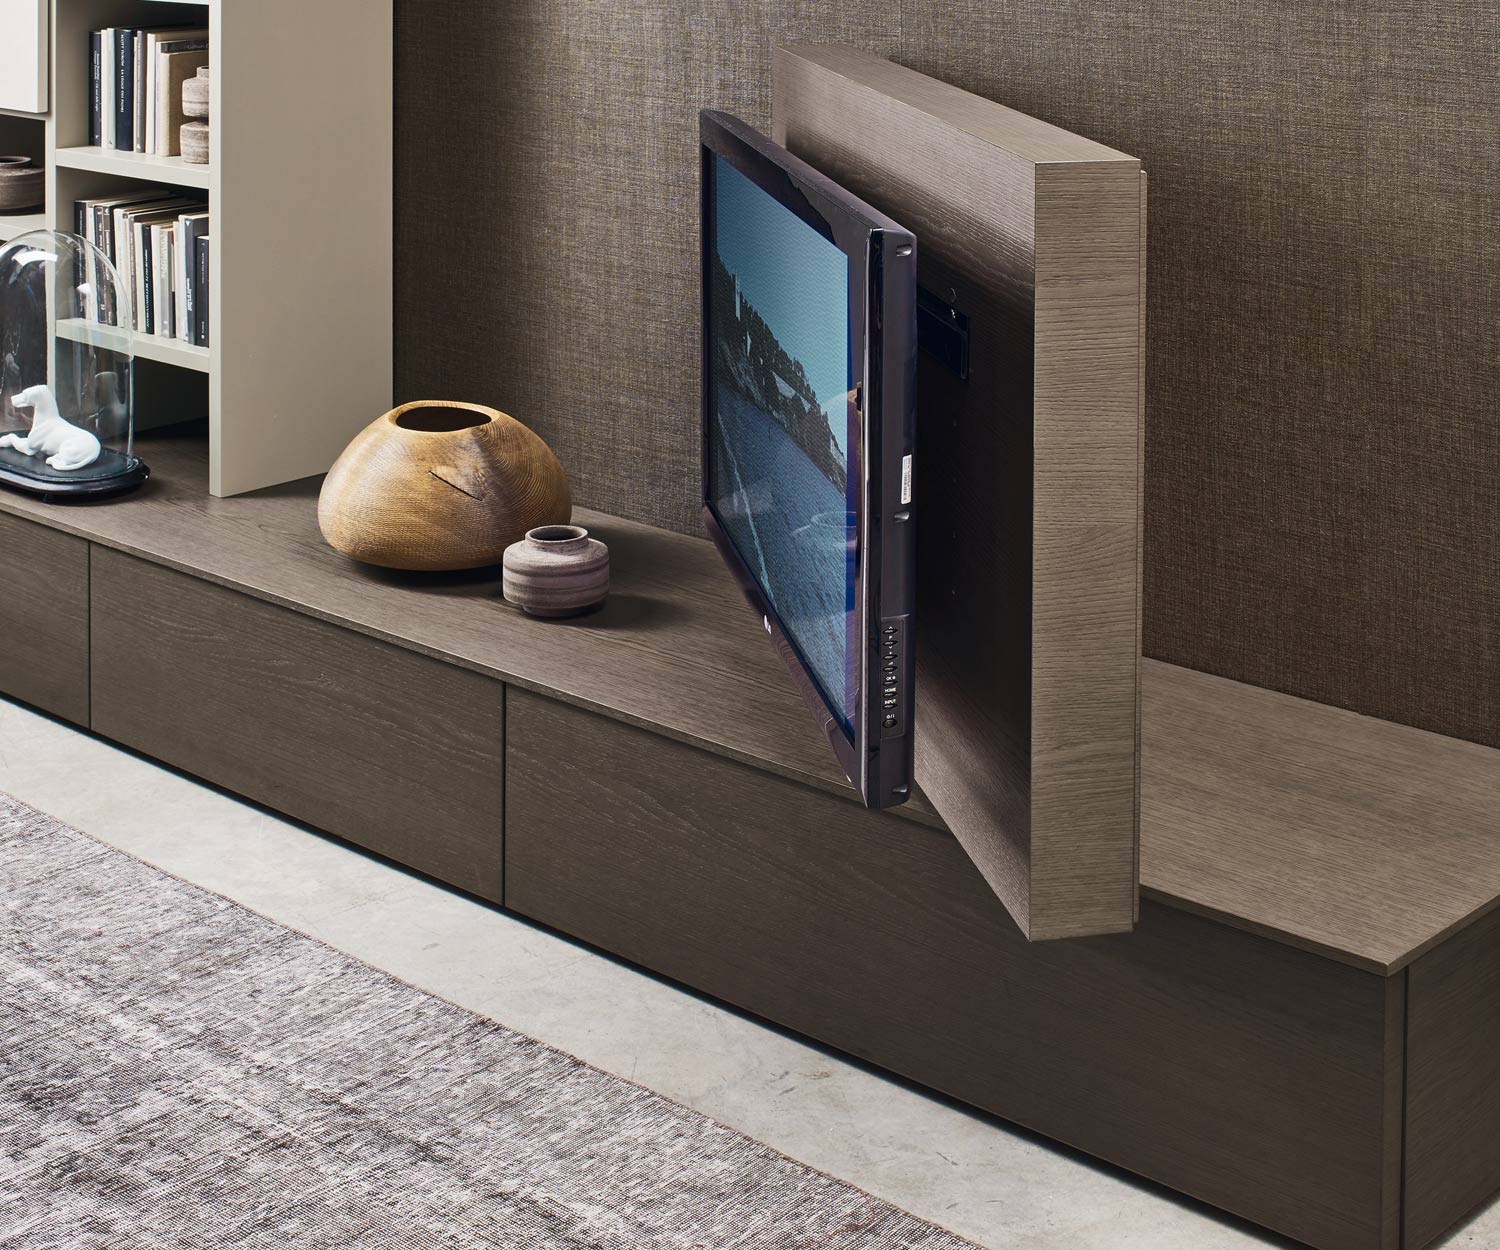 Exclusif Livitalia Vision Design Lowboard avec panneau TV pivotant à 90